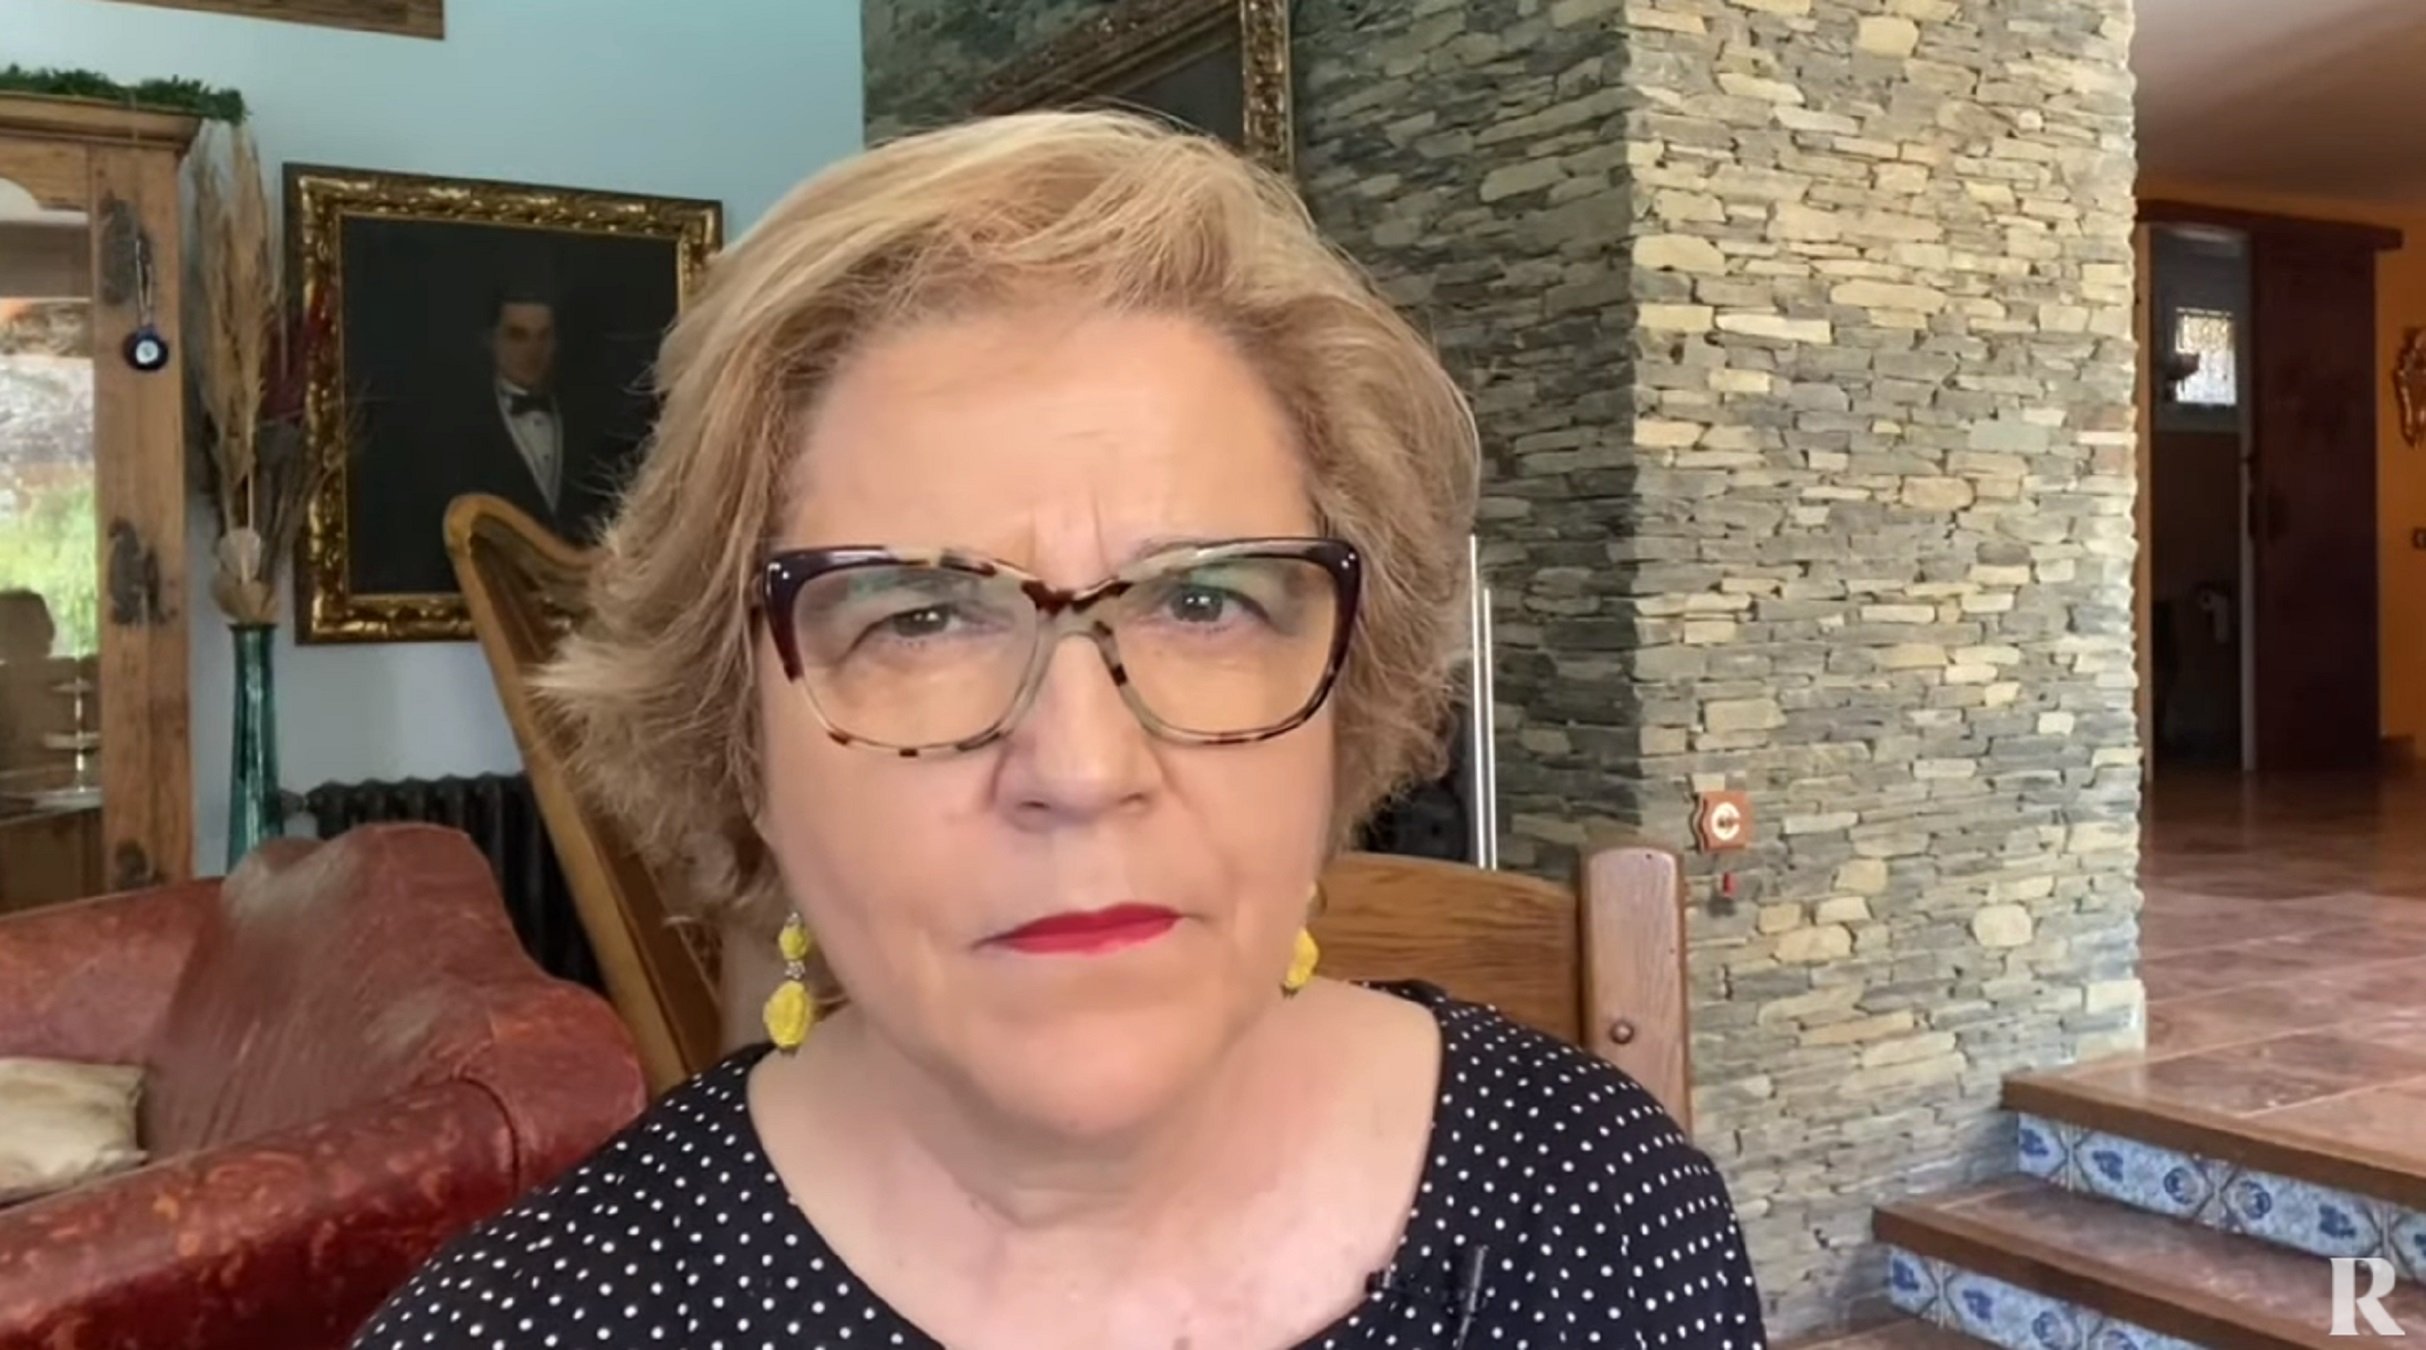 Rahola a la ministra Rodríguez tras lo que ha dicho de Catalunya: "¡A la porra!"